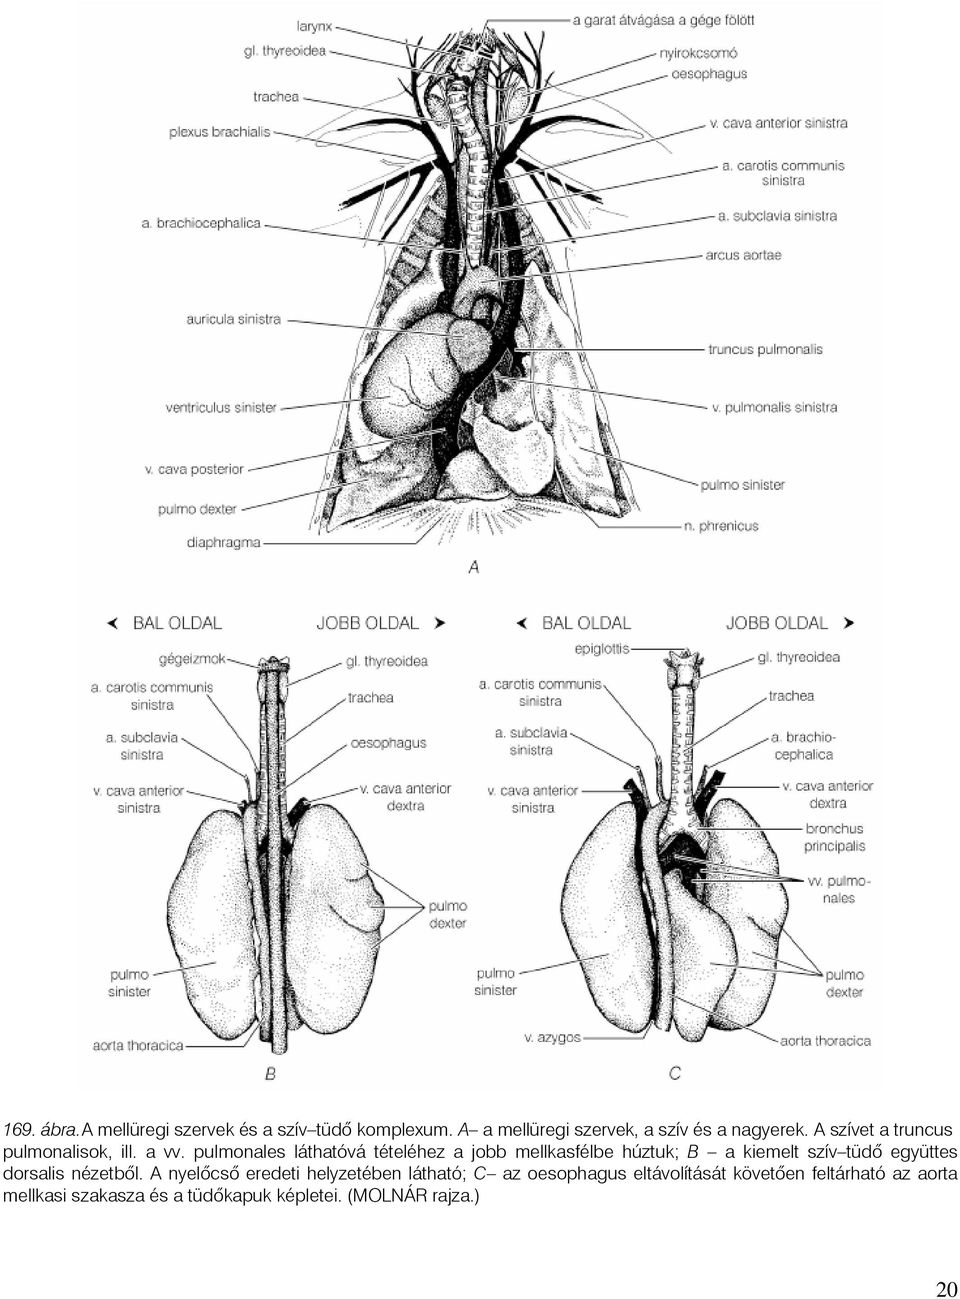 pulmonales láthatóvá tételéhez a jobb mellkasfélbe húztuk; B a kiemelt szív tüdõ együttes dorsalis